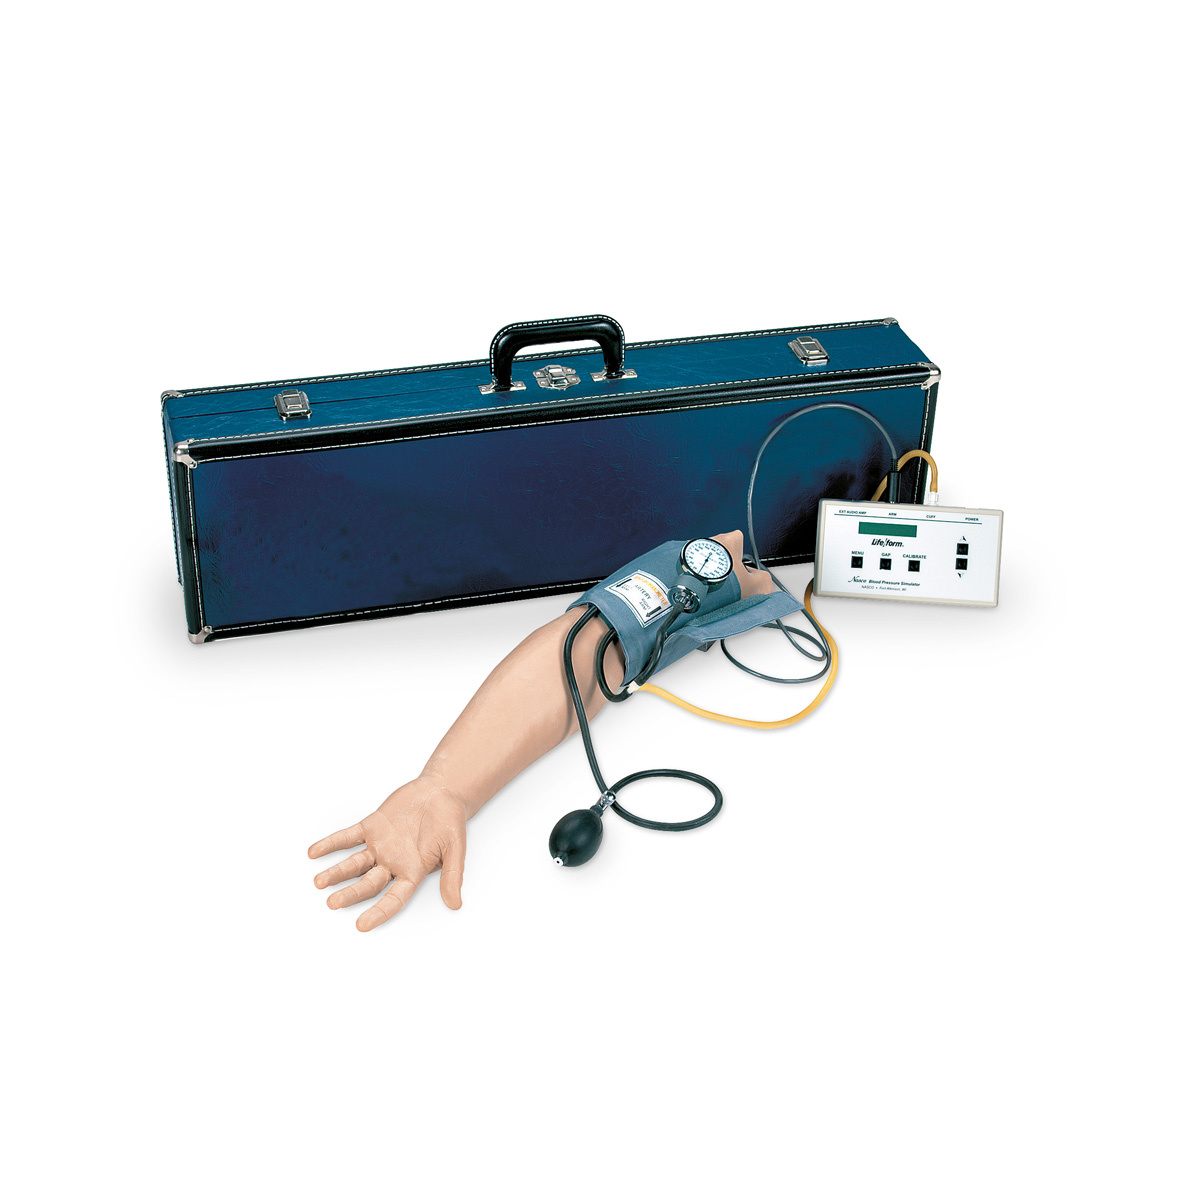 Bras pour tension artérielle - 1005621 - W44085 - Life/form - LF01095U -  Mesurer la pression artérielle - 3B Scientific